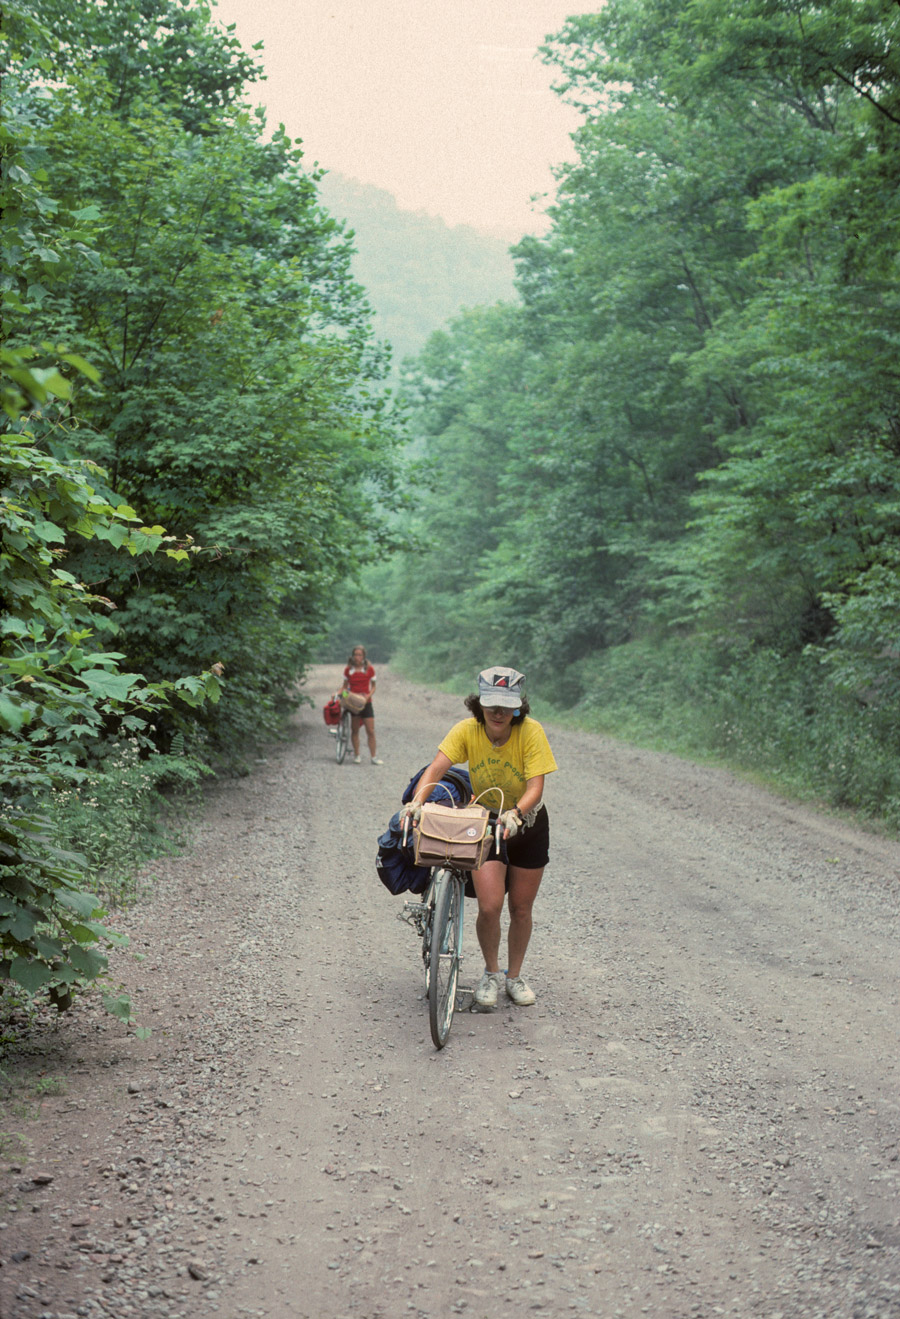 Bikecentennial riders photo by Bill Weir